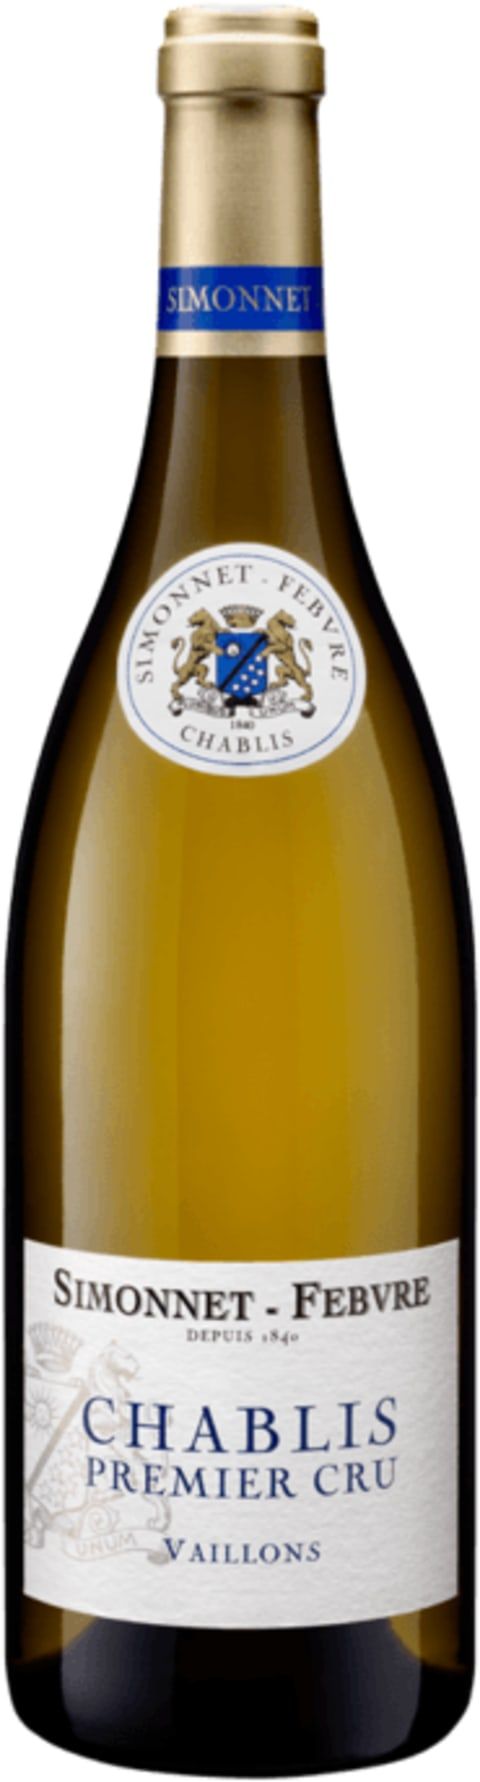 Simonnet-Febvre Chablis Vaillons Premier Cru 2020 | Wine.com | Wine.com